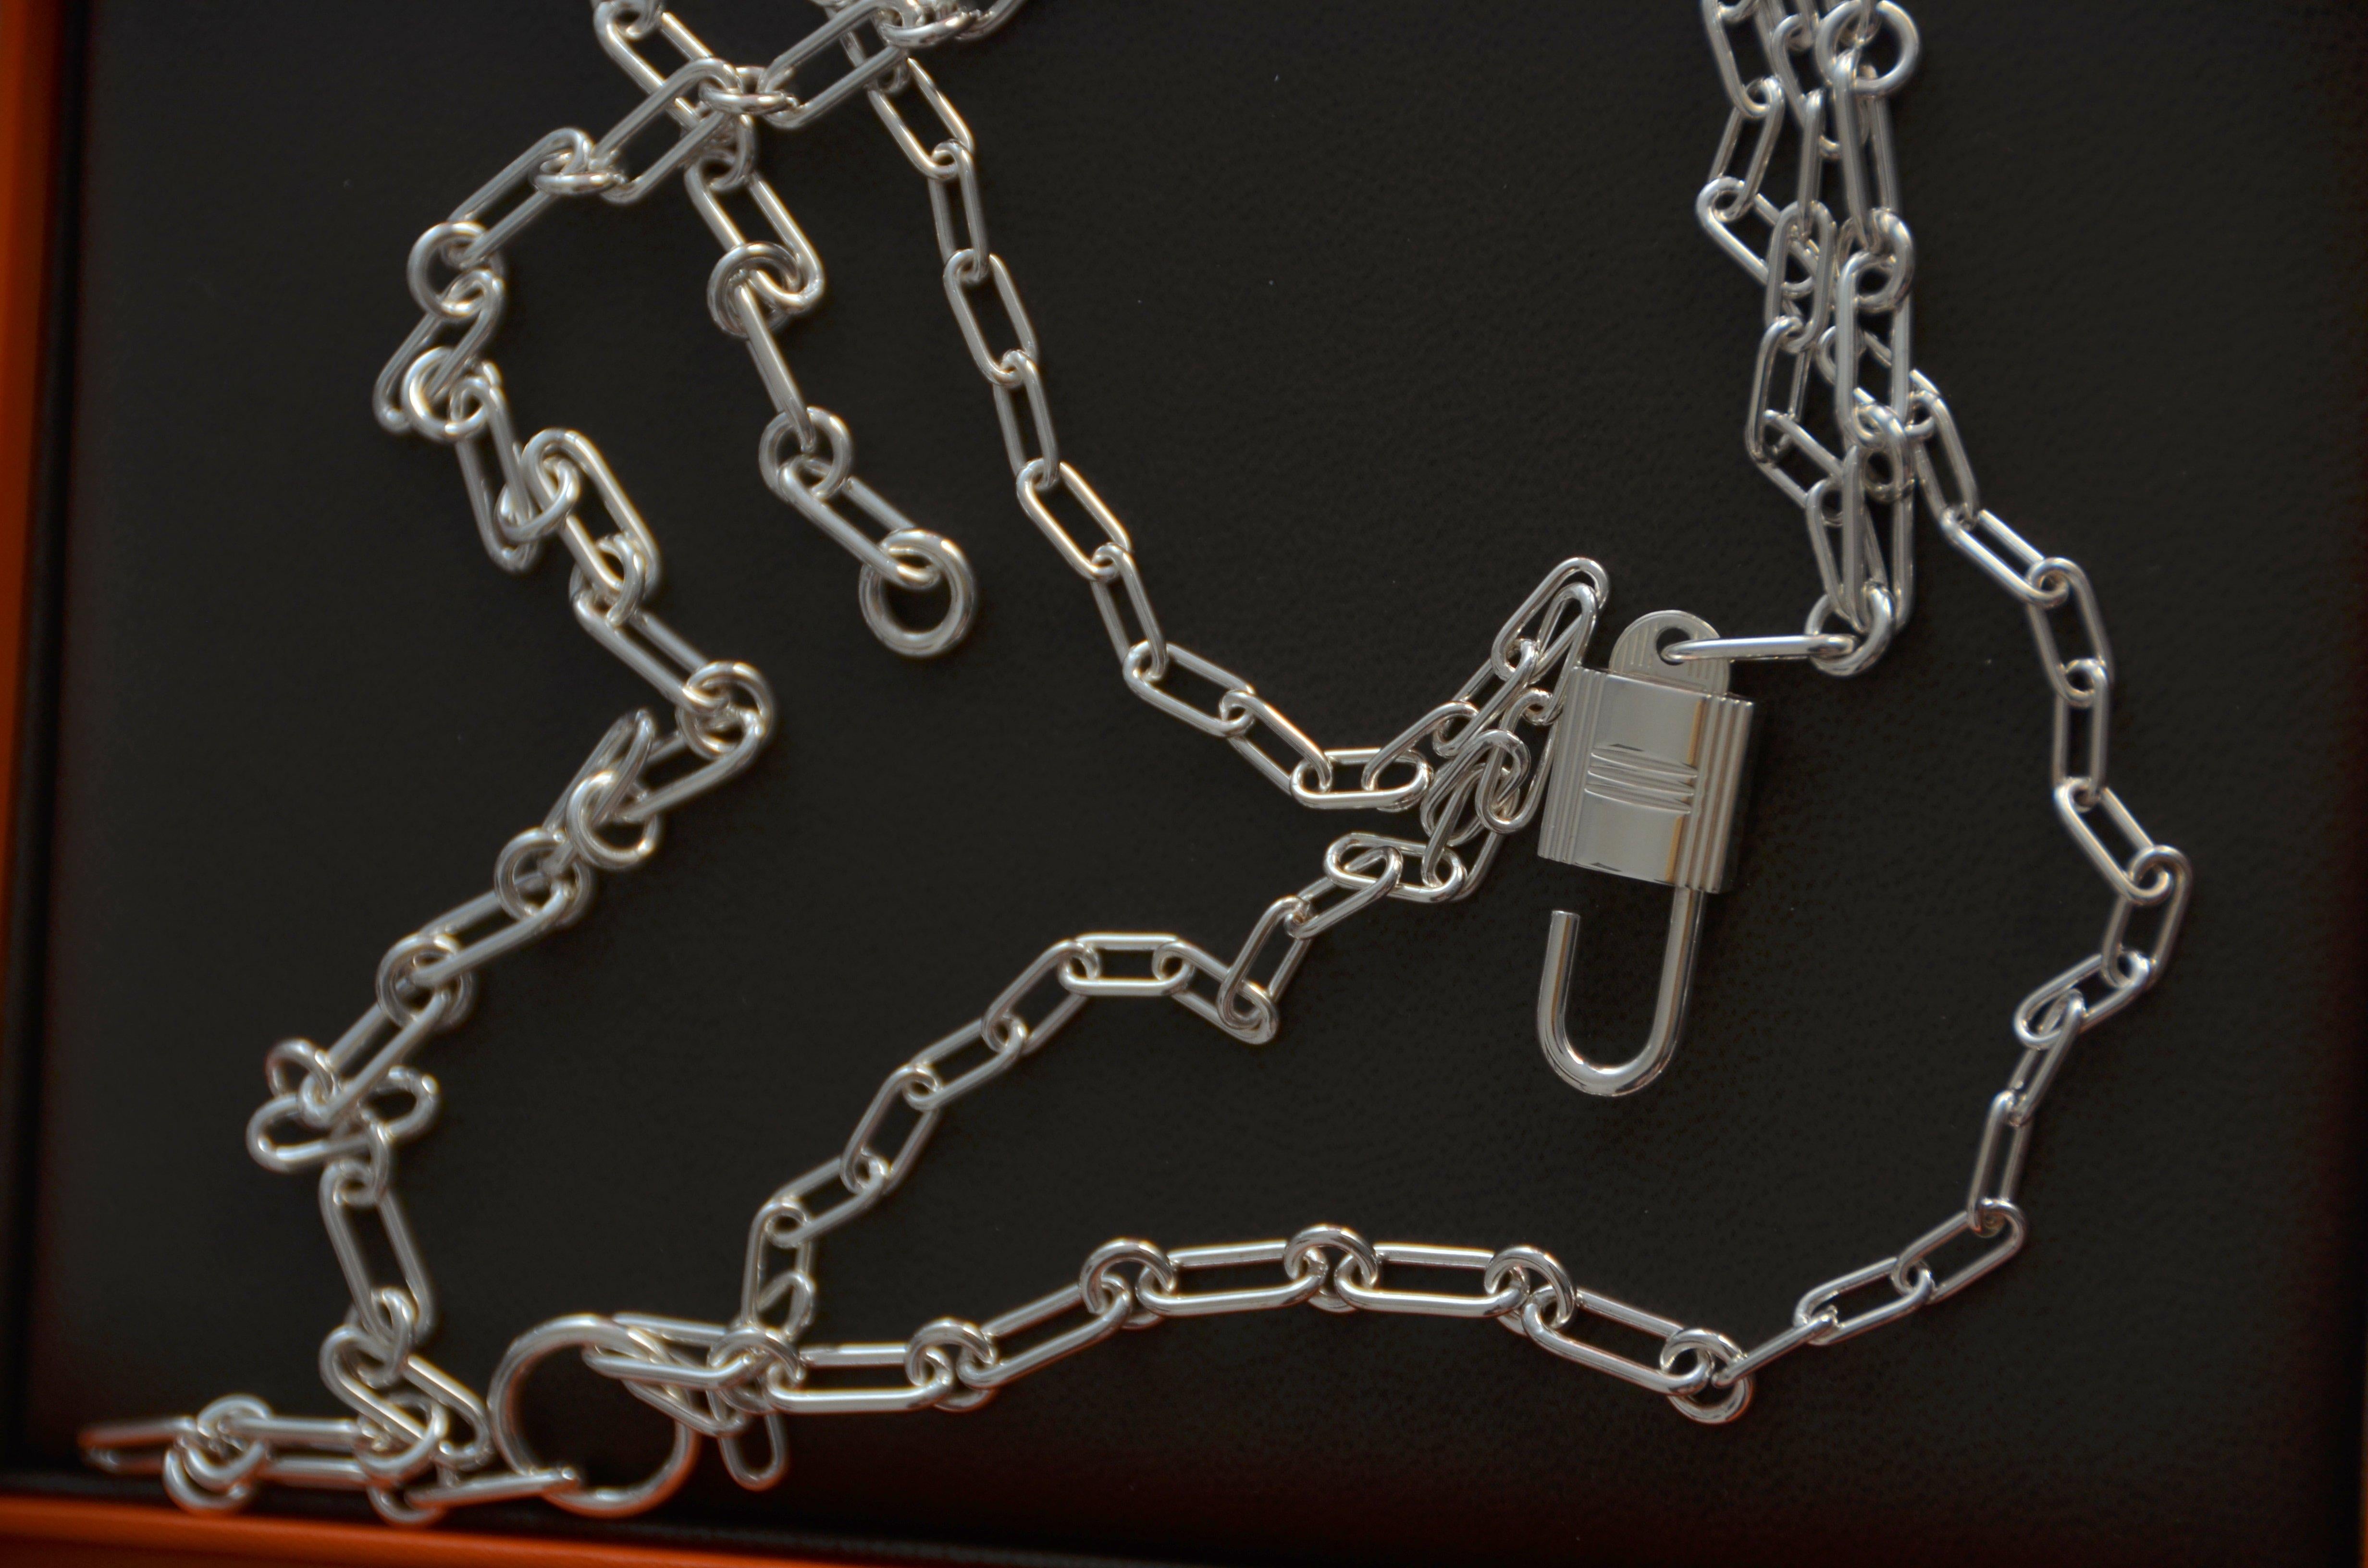 Sautoir Alphakelly Hermes, modèle moyen
Long collier en argent sterling. Le cadenas, motif emblématique du sac Kelly, est révélé dans une version argentée et présente un jeu de chaînes de différentes tailles.
Fabriqué en Italie
Argent